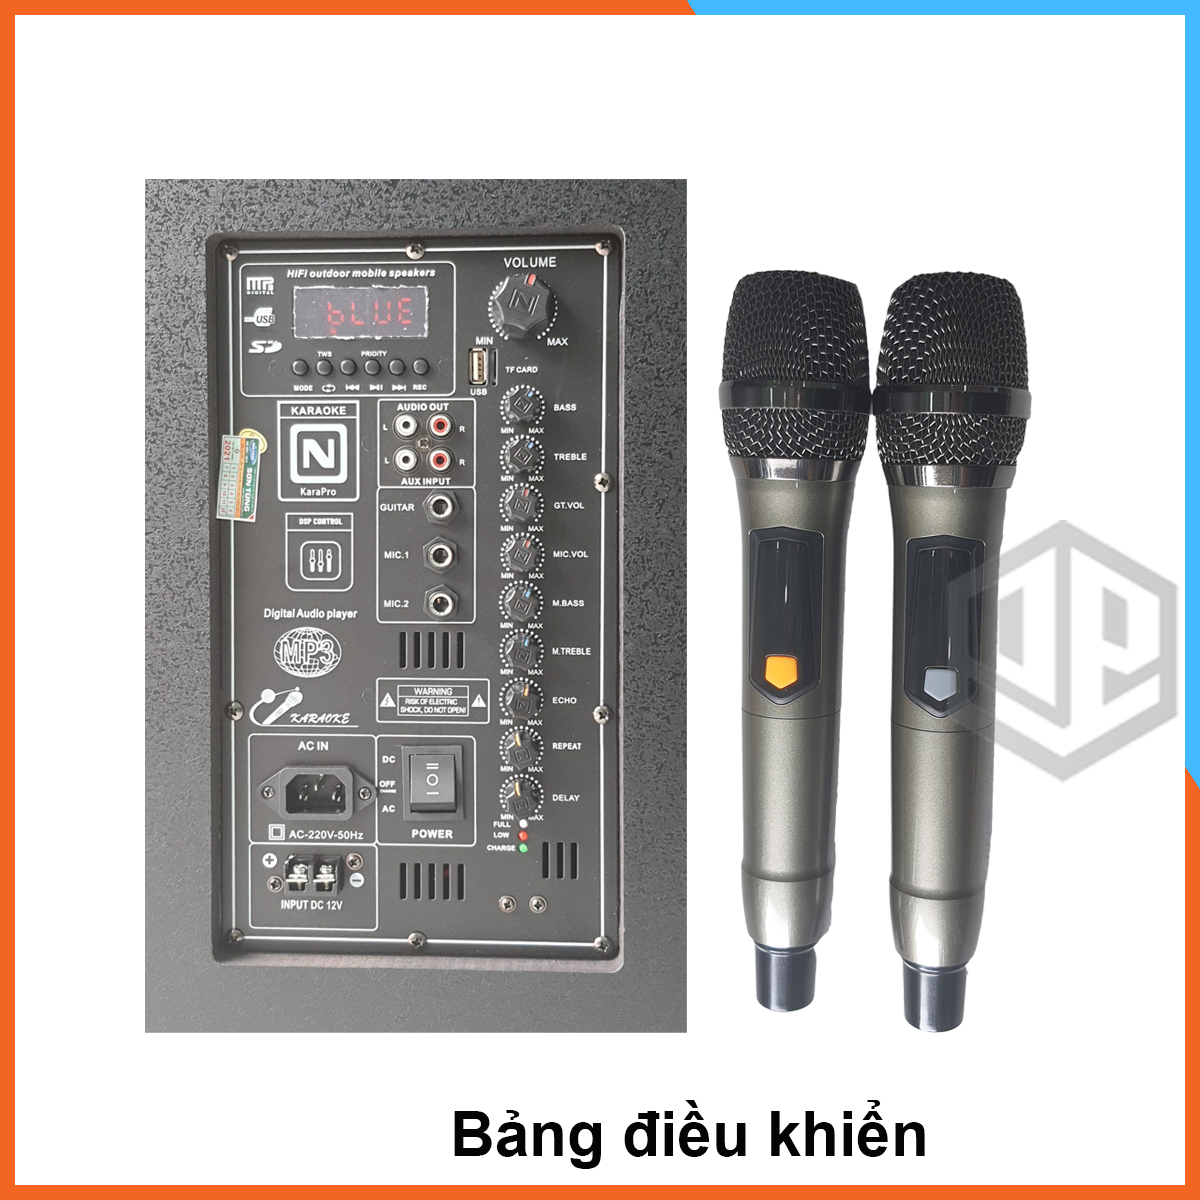 Loa Kéo Karaoke Nanomax SK_15x5 Bluetooth Bass 40 Tặng 2 Mic Đọc Được Usb Thẻ Nhớ Công Suất 620w Có Bánh Xe Cao Cấp hàng chính hãng